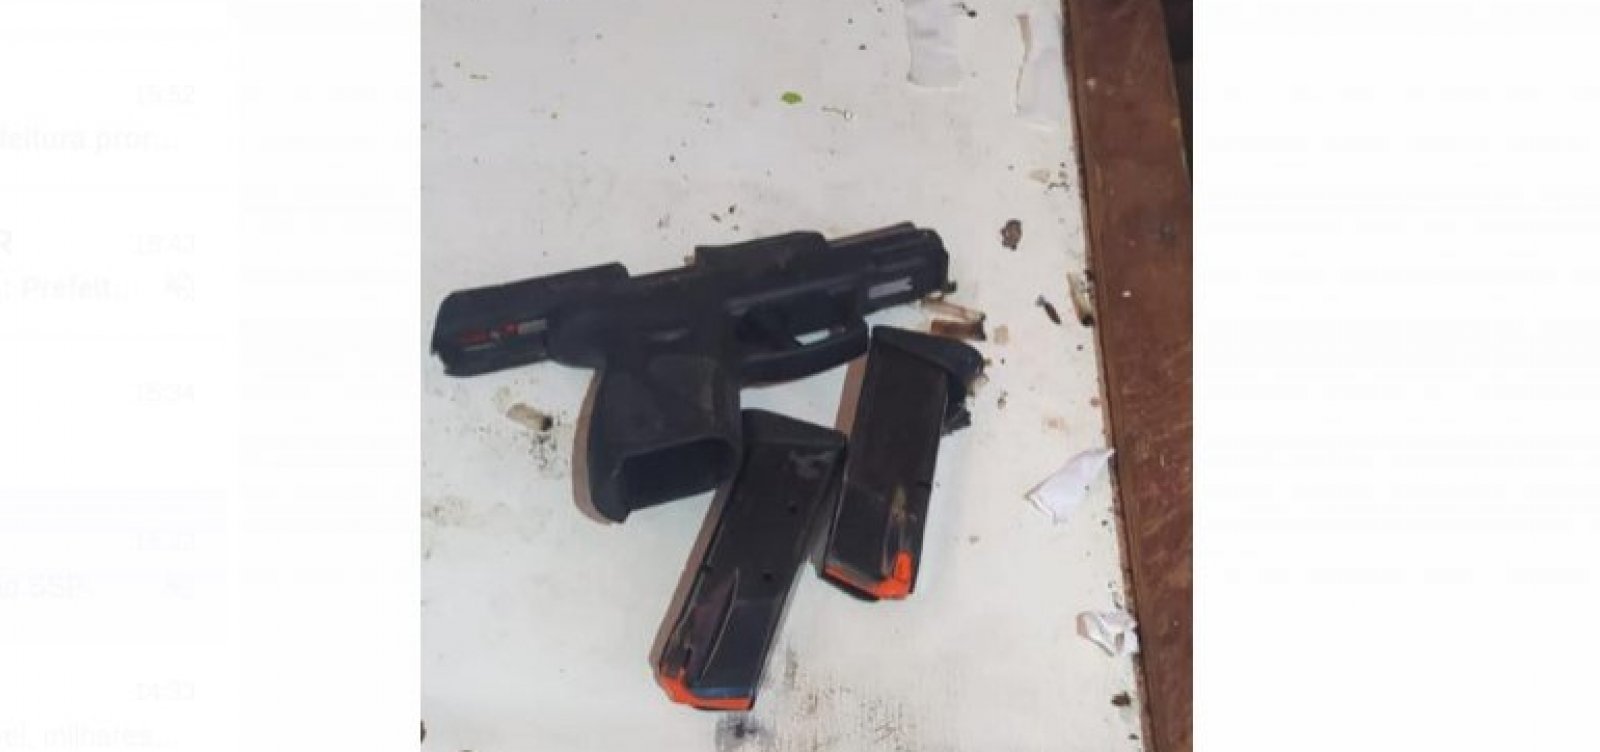 Após rebelião com cinco mortes, pistola é encontrada durante revista na Lemos Brito